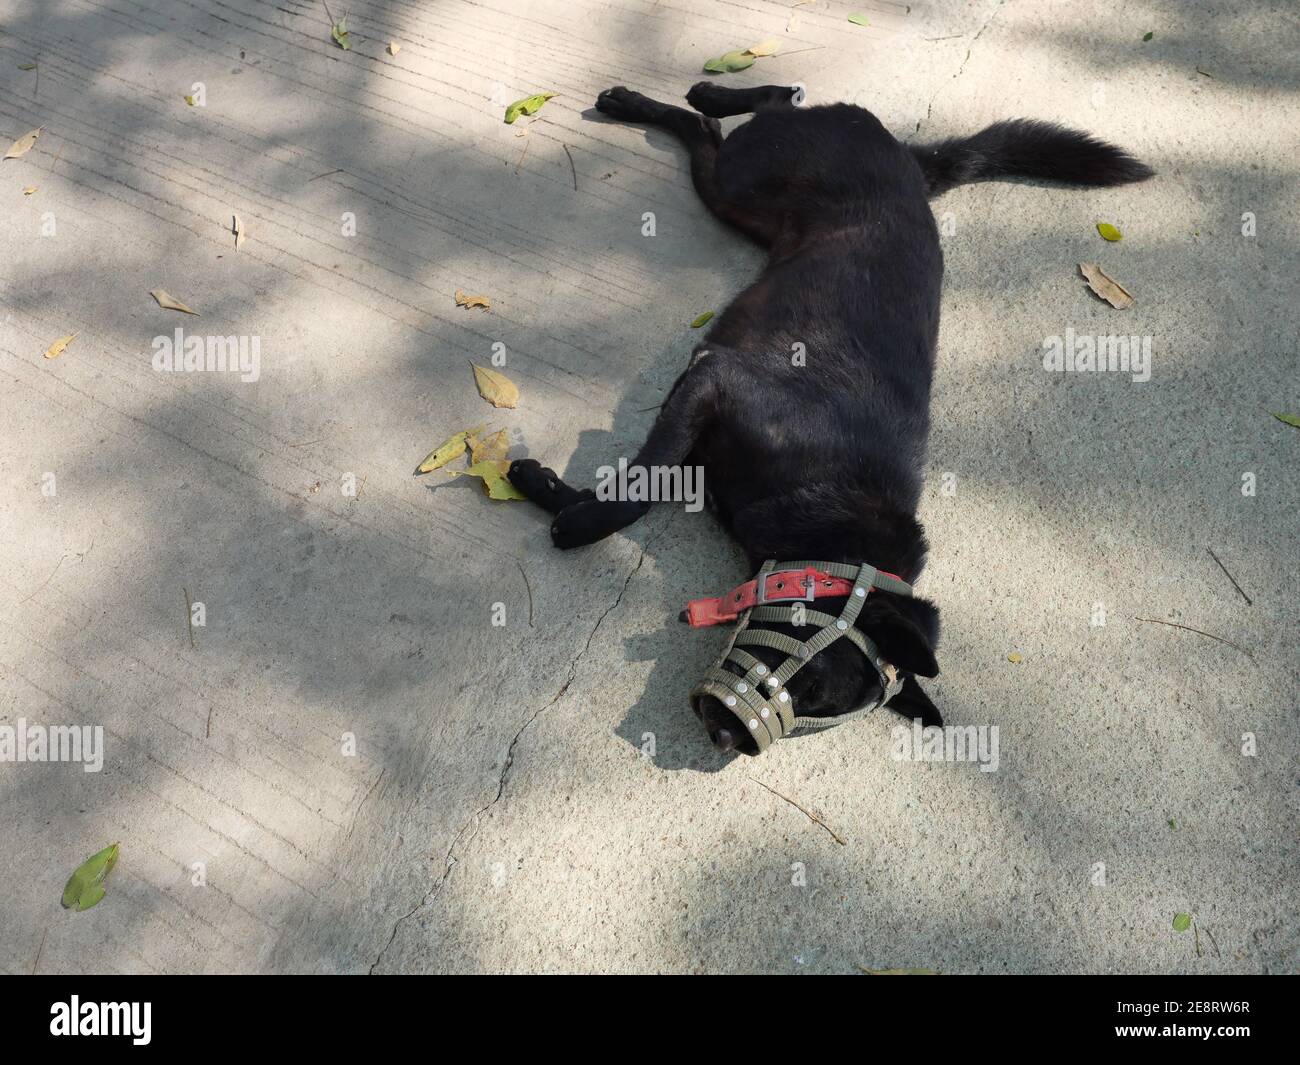 La bocca del cane nero dai capelli corti era coperta di museruola, PET dormiva su terreno grigio Foto Stock